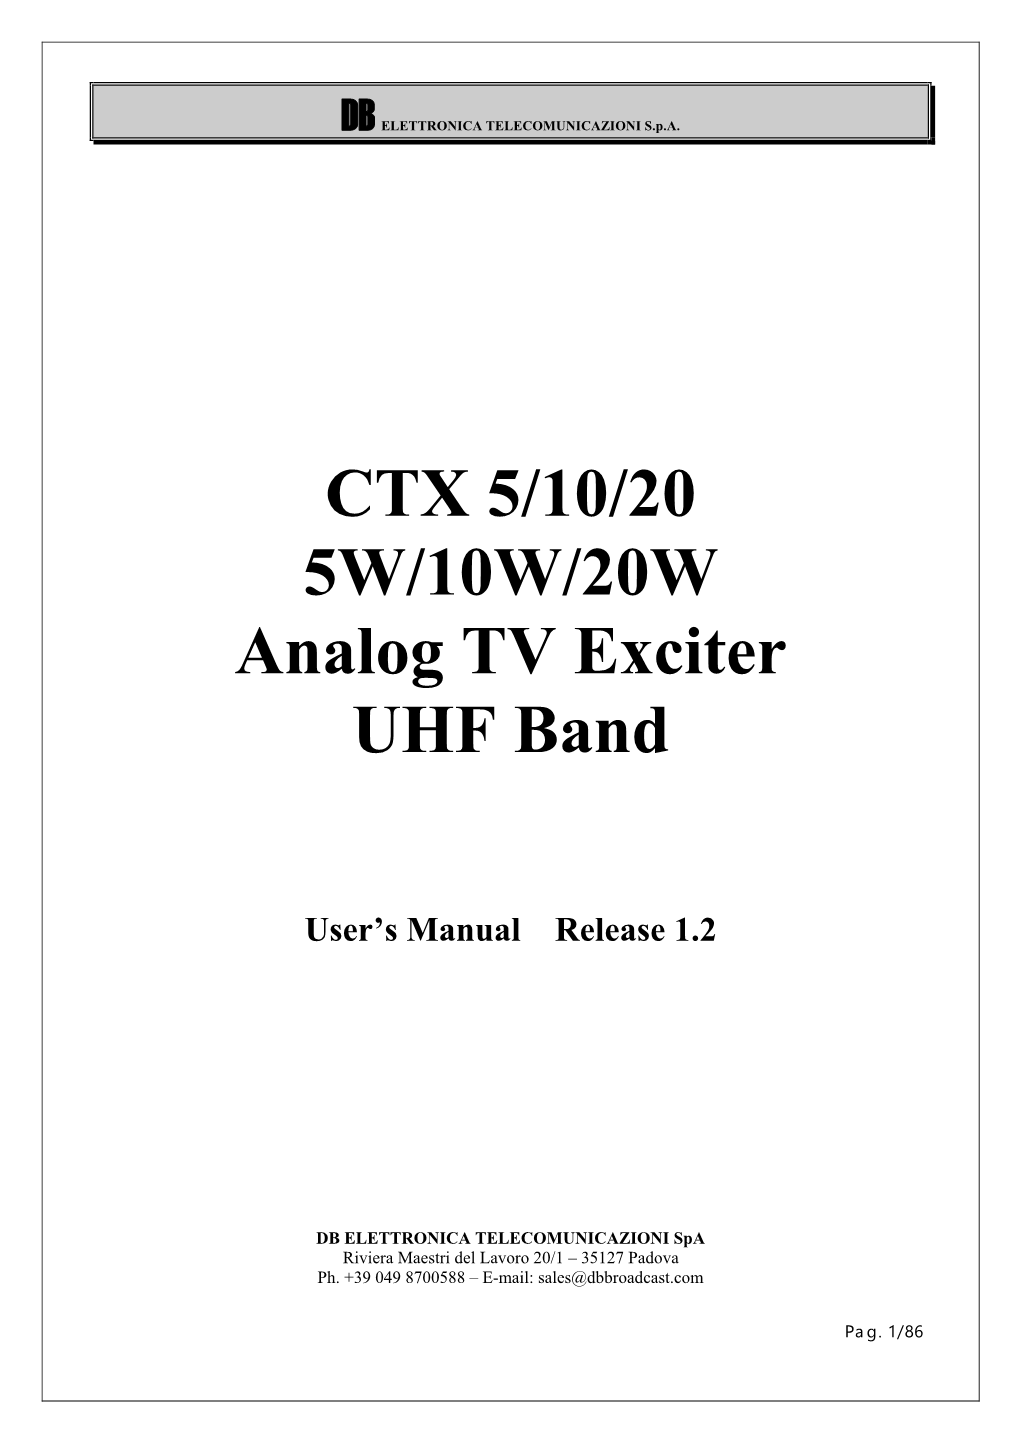 CTX 5/10/20 5W/10W/20W Analog TV Exciter UHF Band